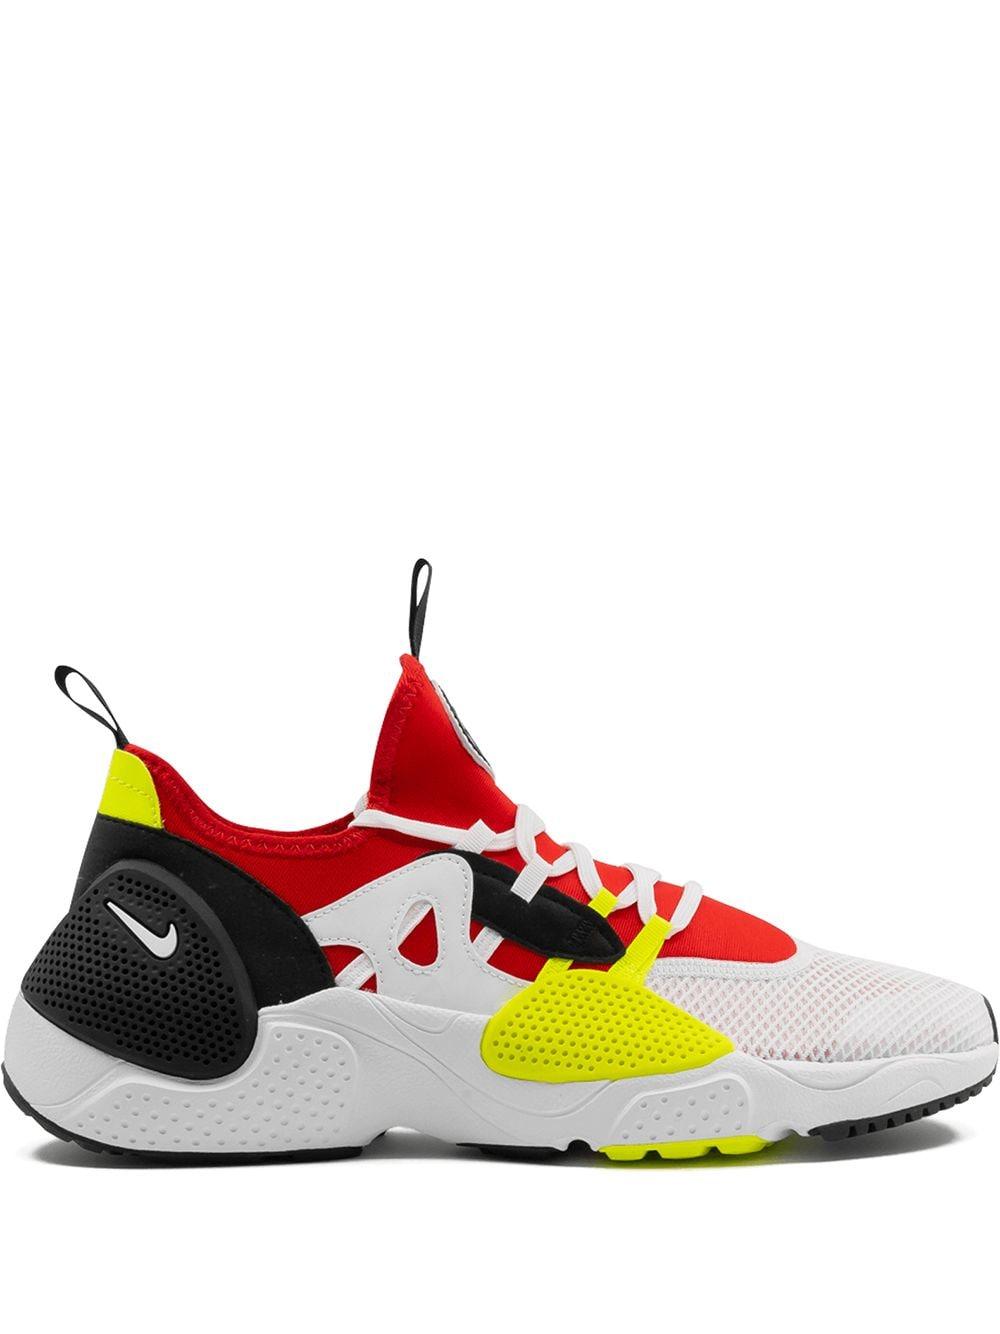 Nike Huarache EDGE TXT sneakers (AO1697 